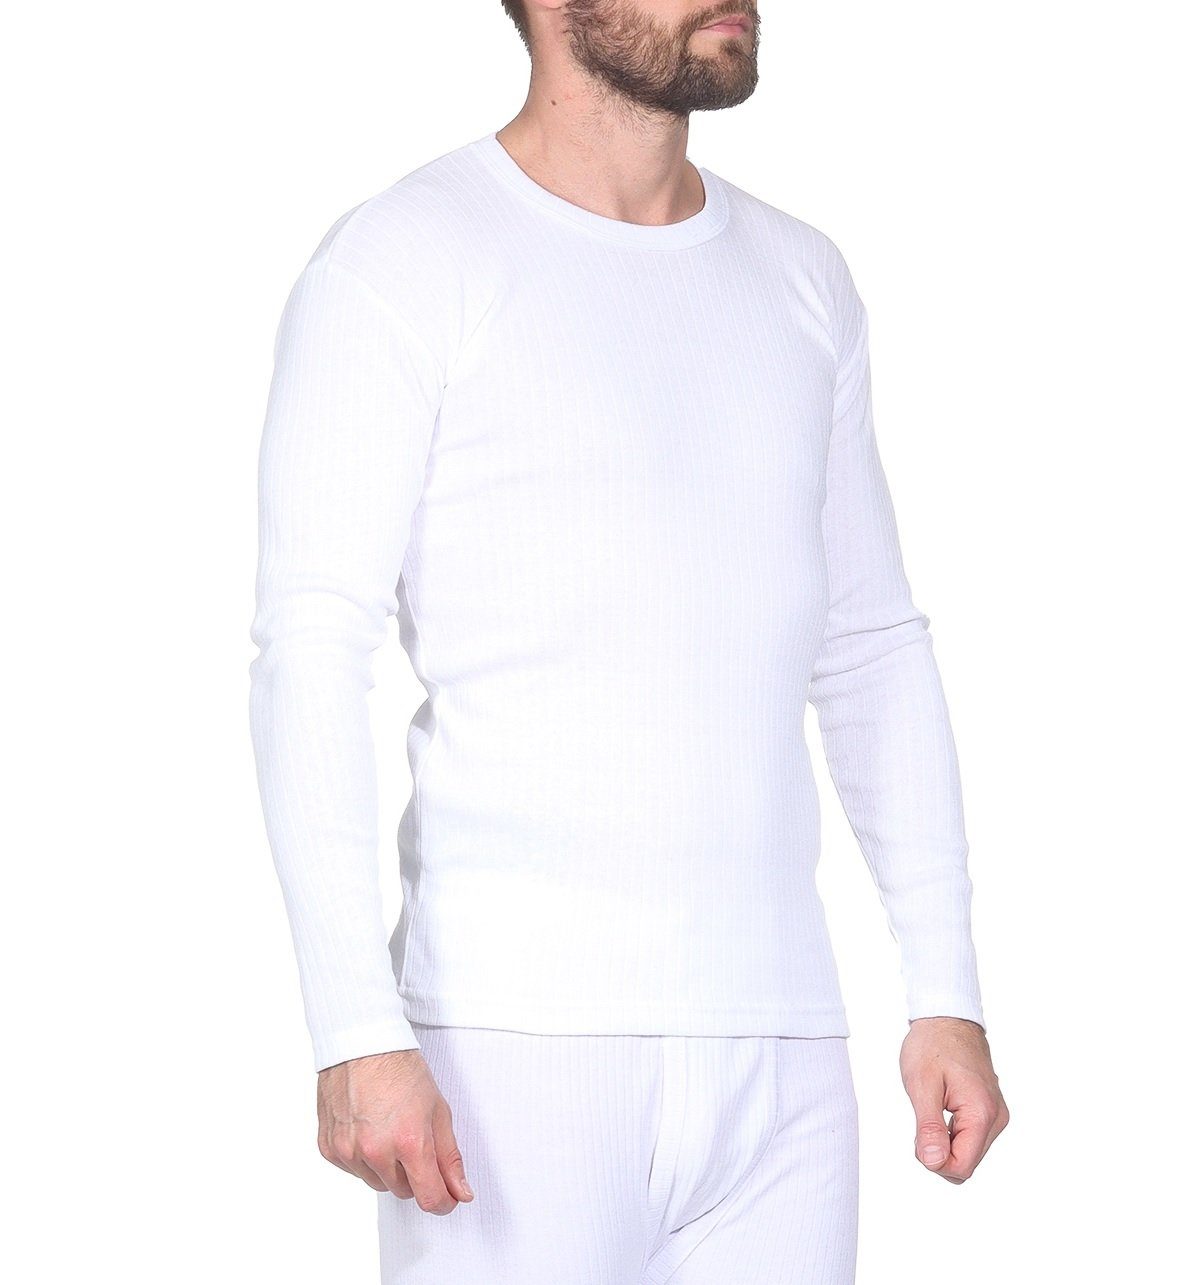 OriginalYou Thermounterhemd Funktionsunterwäsche 2 warme Unterziehhemden für Herren (2er-Pack) auch in großen Größen erhältlich, ideal für den Winterurlaub Weiß